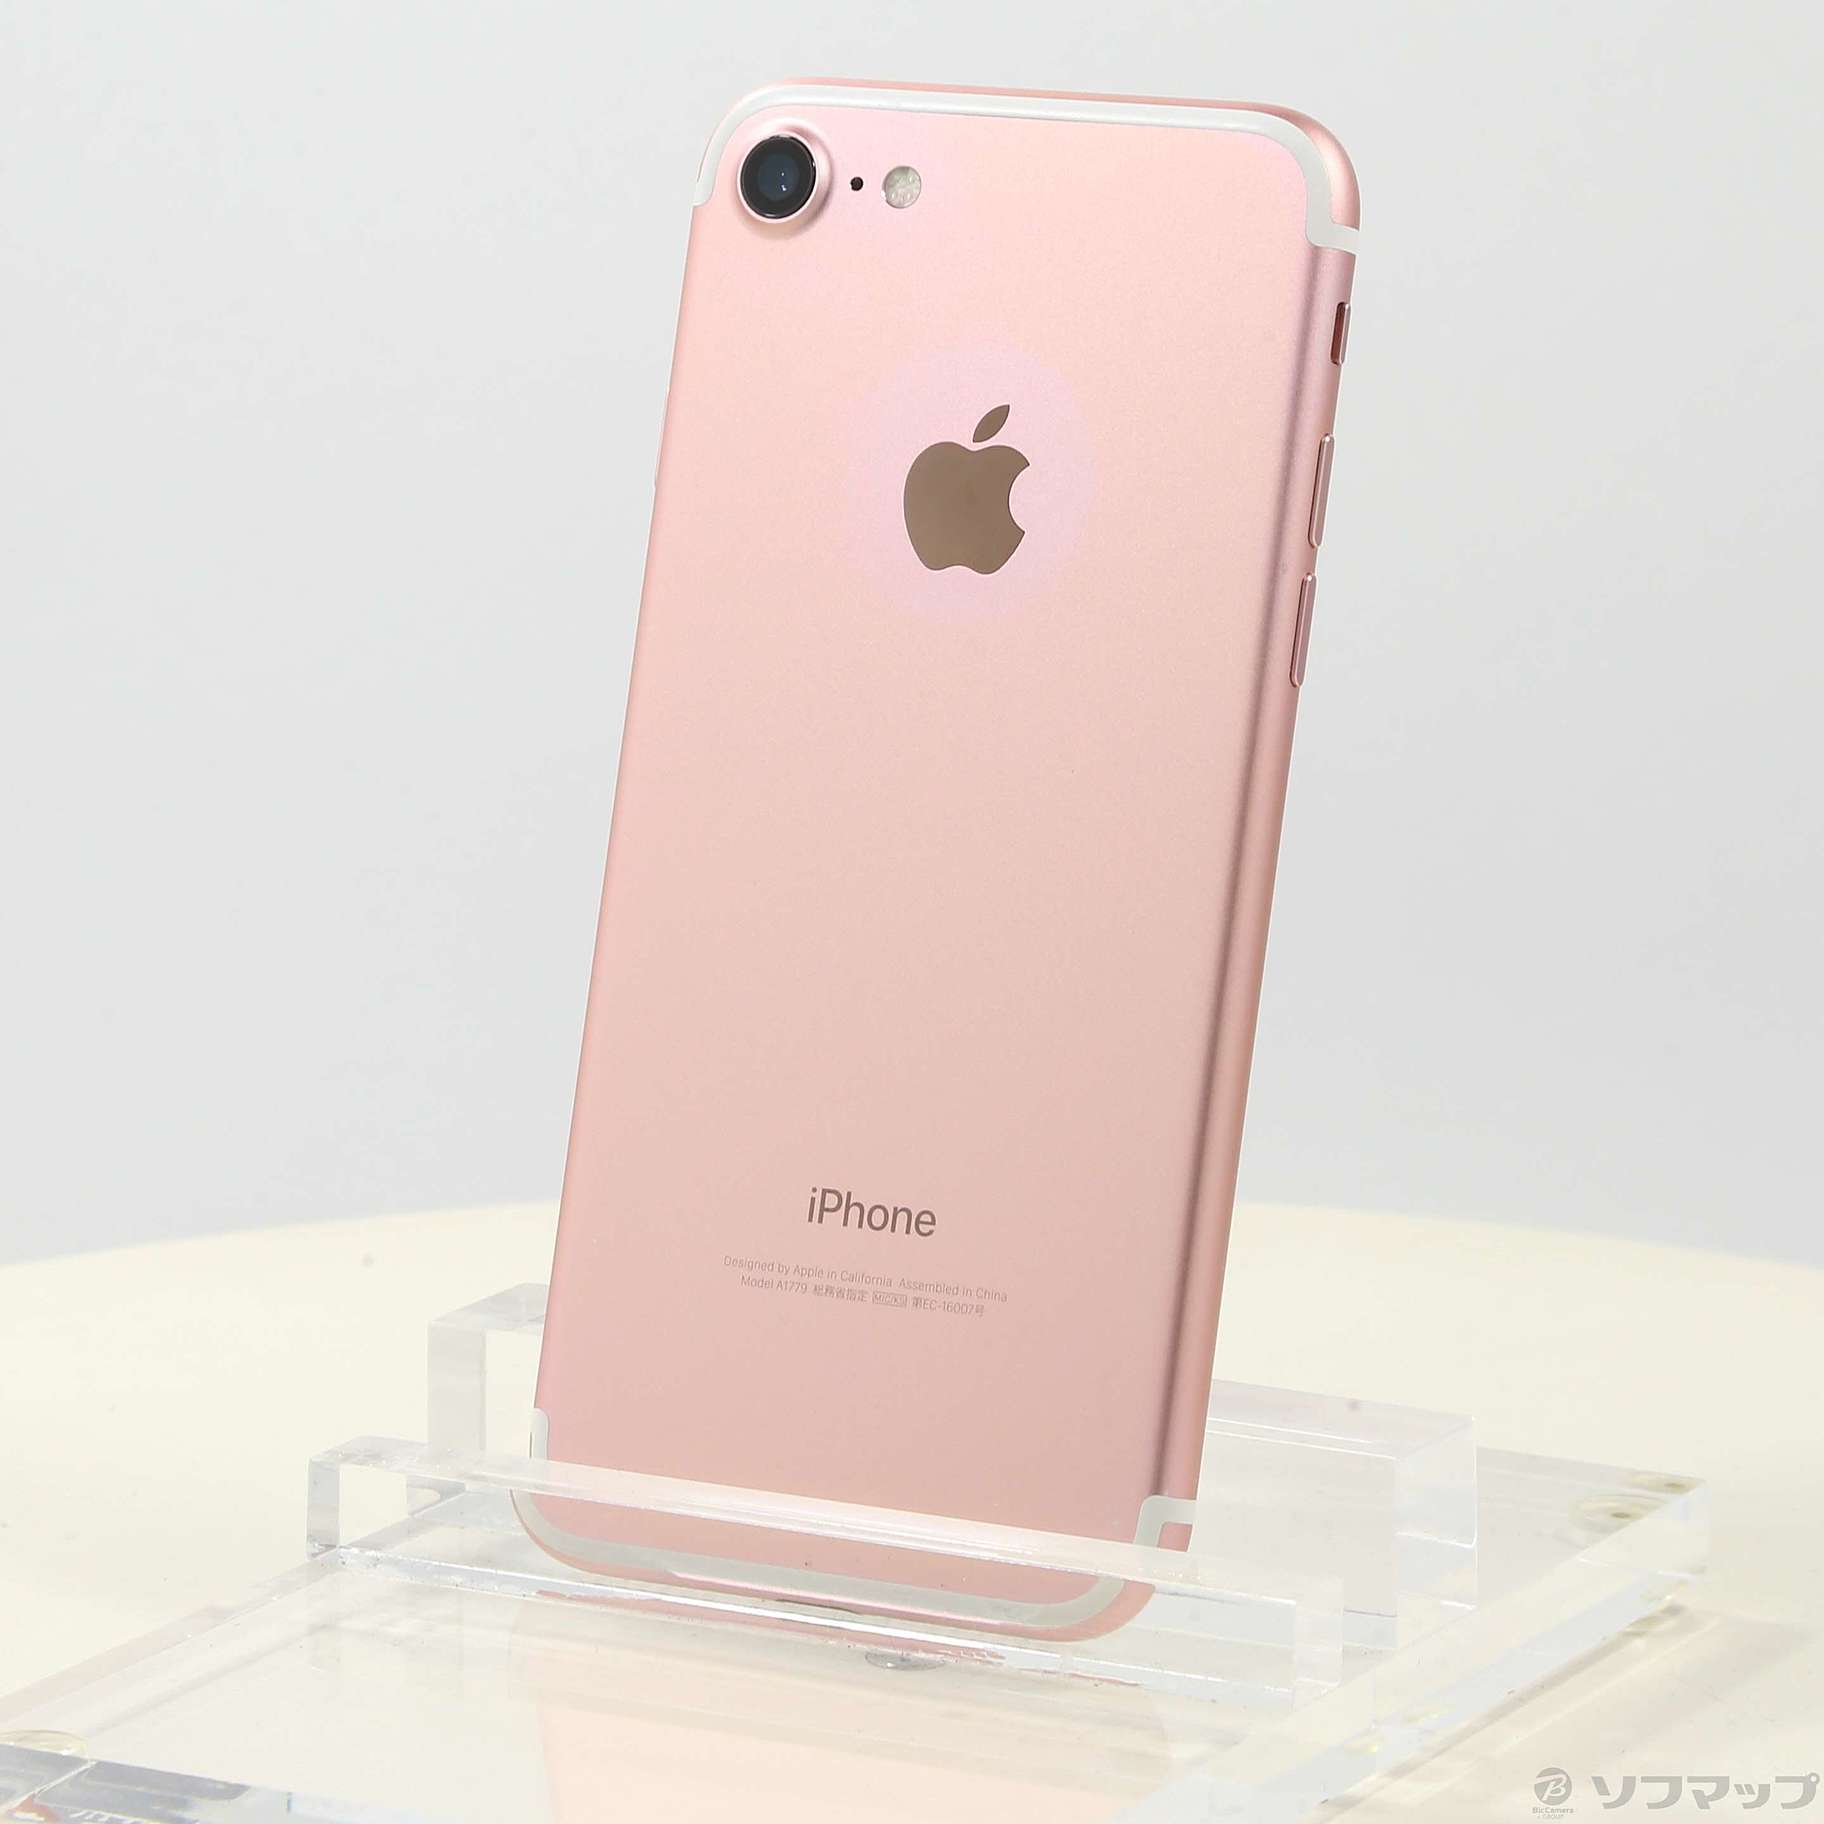 【即日発送】iPhone7 256GB ローズゴールド ピンク【本体】